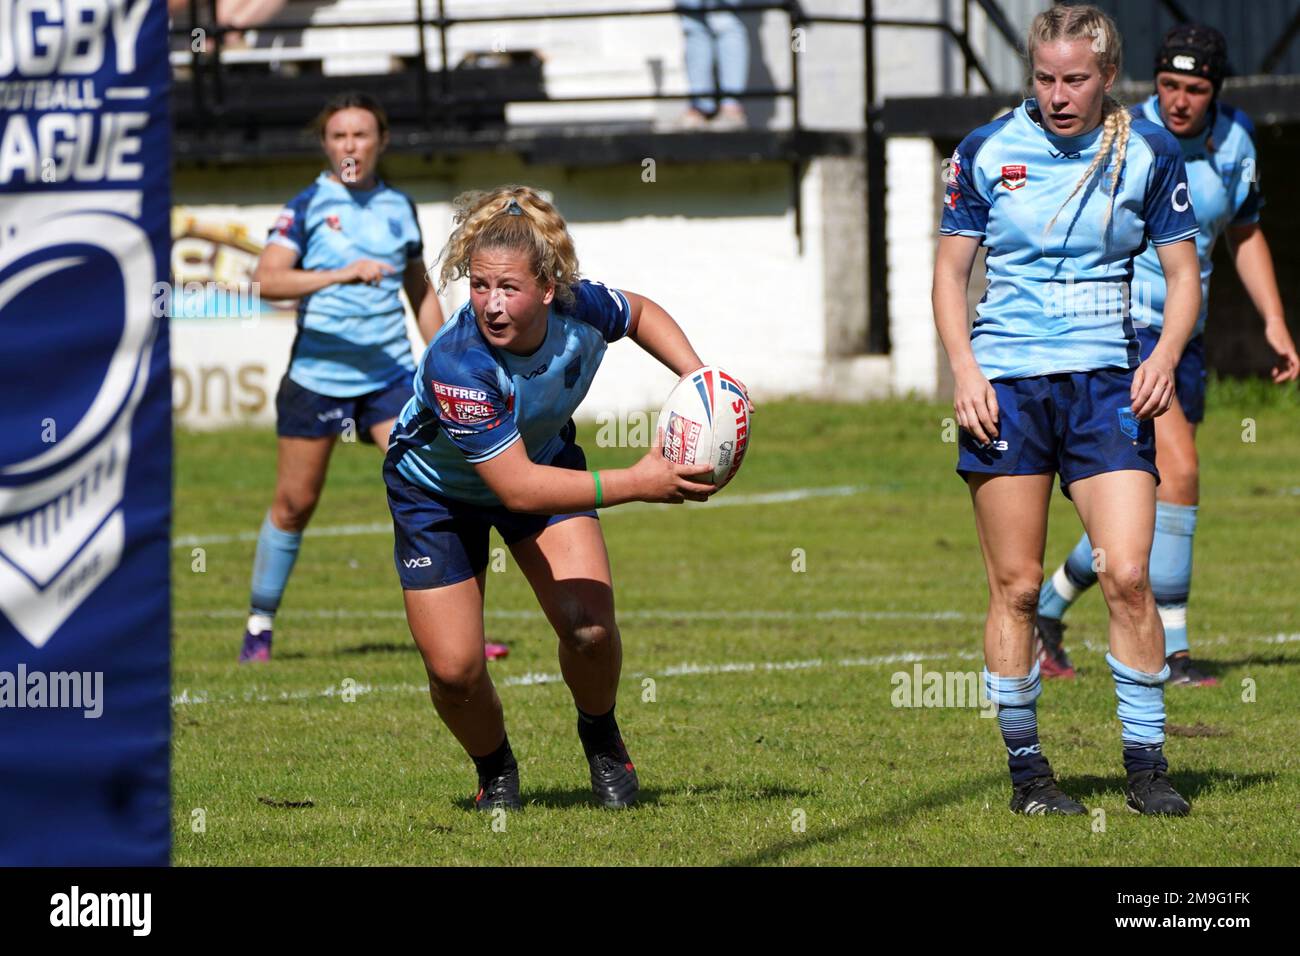 Molly Reardon - joueur de rugby gallois Banque D'Images